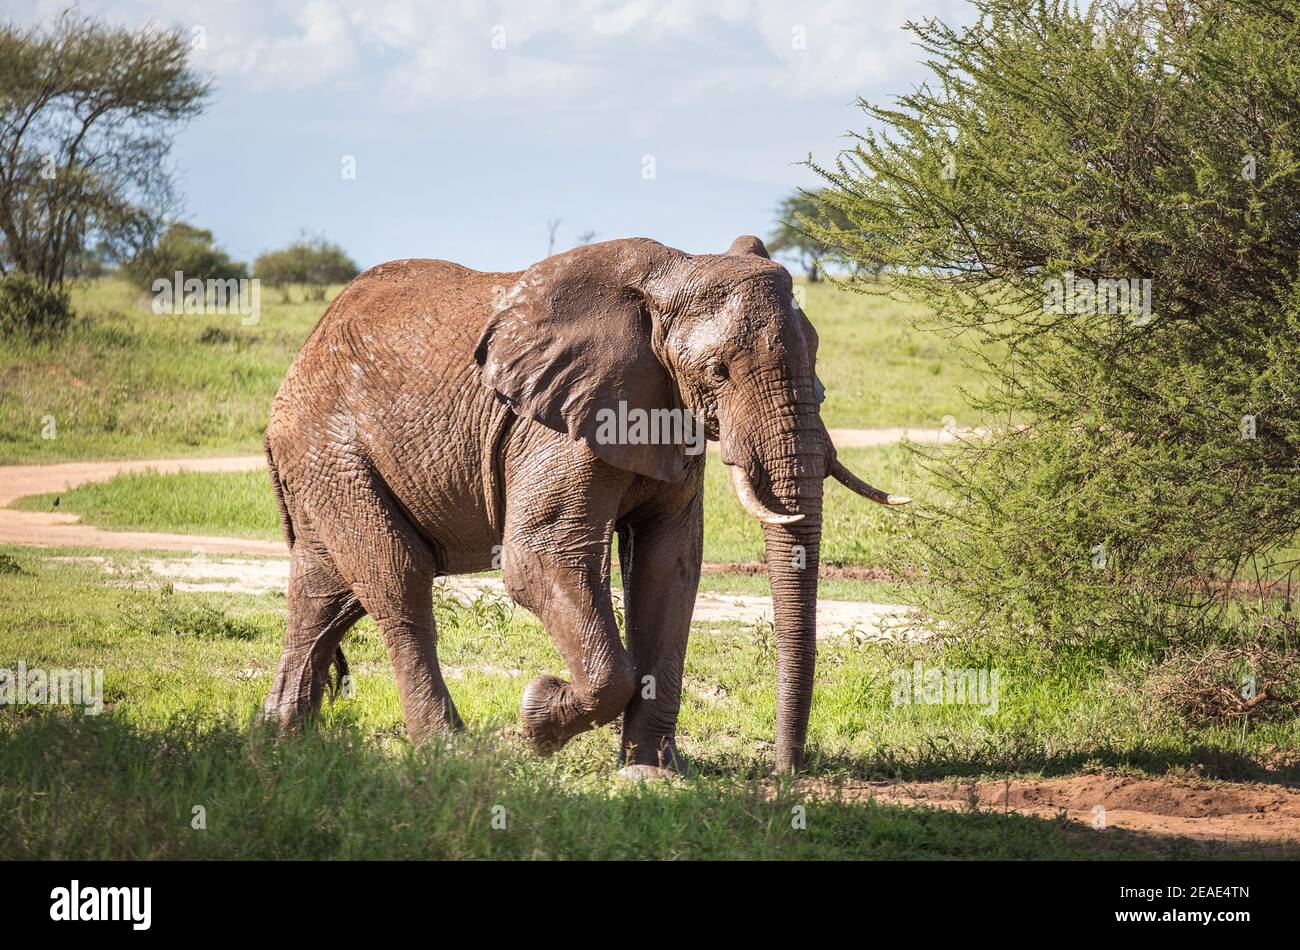 Ritratto di elefante nel giovane cespuglio solitario nel Parco Nazionale del Tarangire, Tanzania. Elefante savana africano - il più grande animale terrestre vivente. Animale Foto Stock